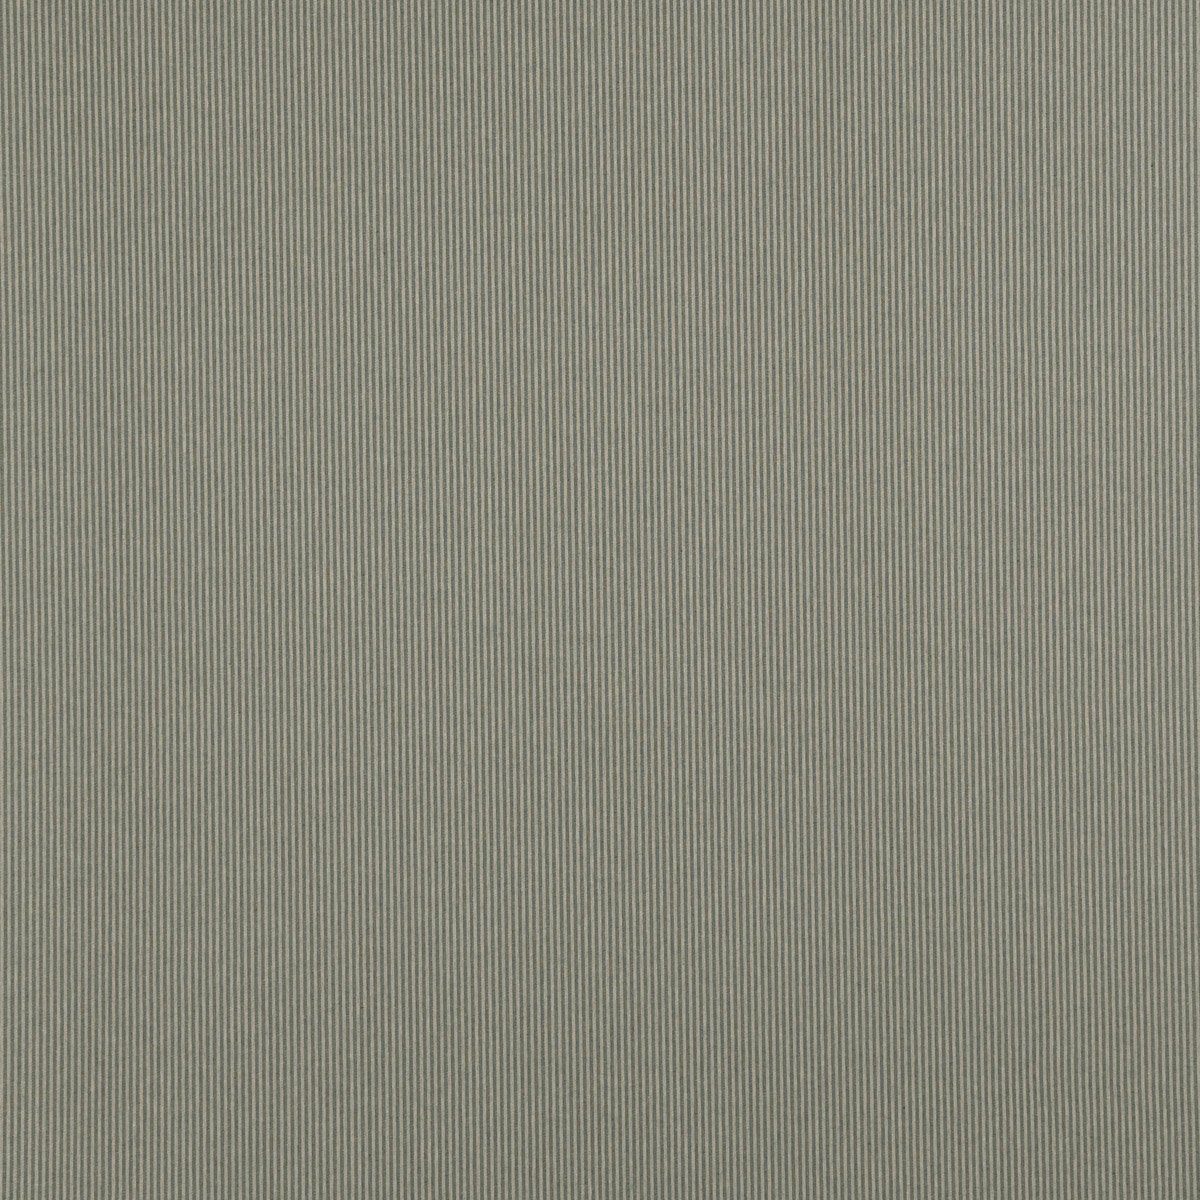 SCHÖNER LEBEN. Tischläufer SCHÖNER LEBEN. 3mm mintgrün handmade beige Streifen 40x160cm, Tischläufer